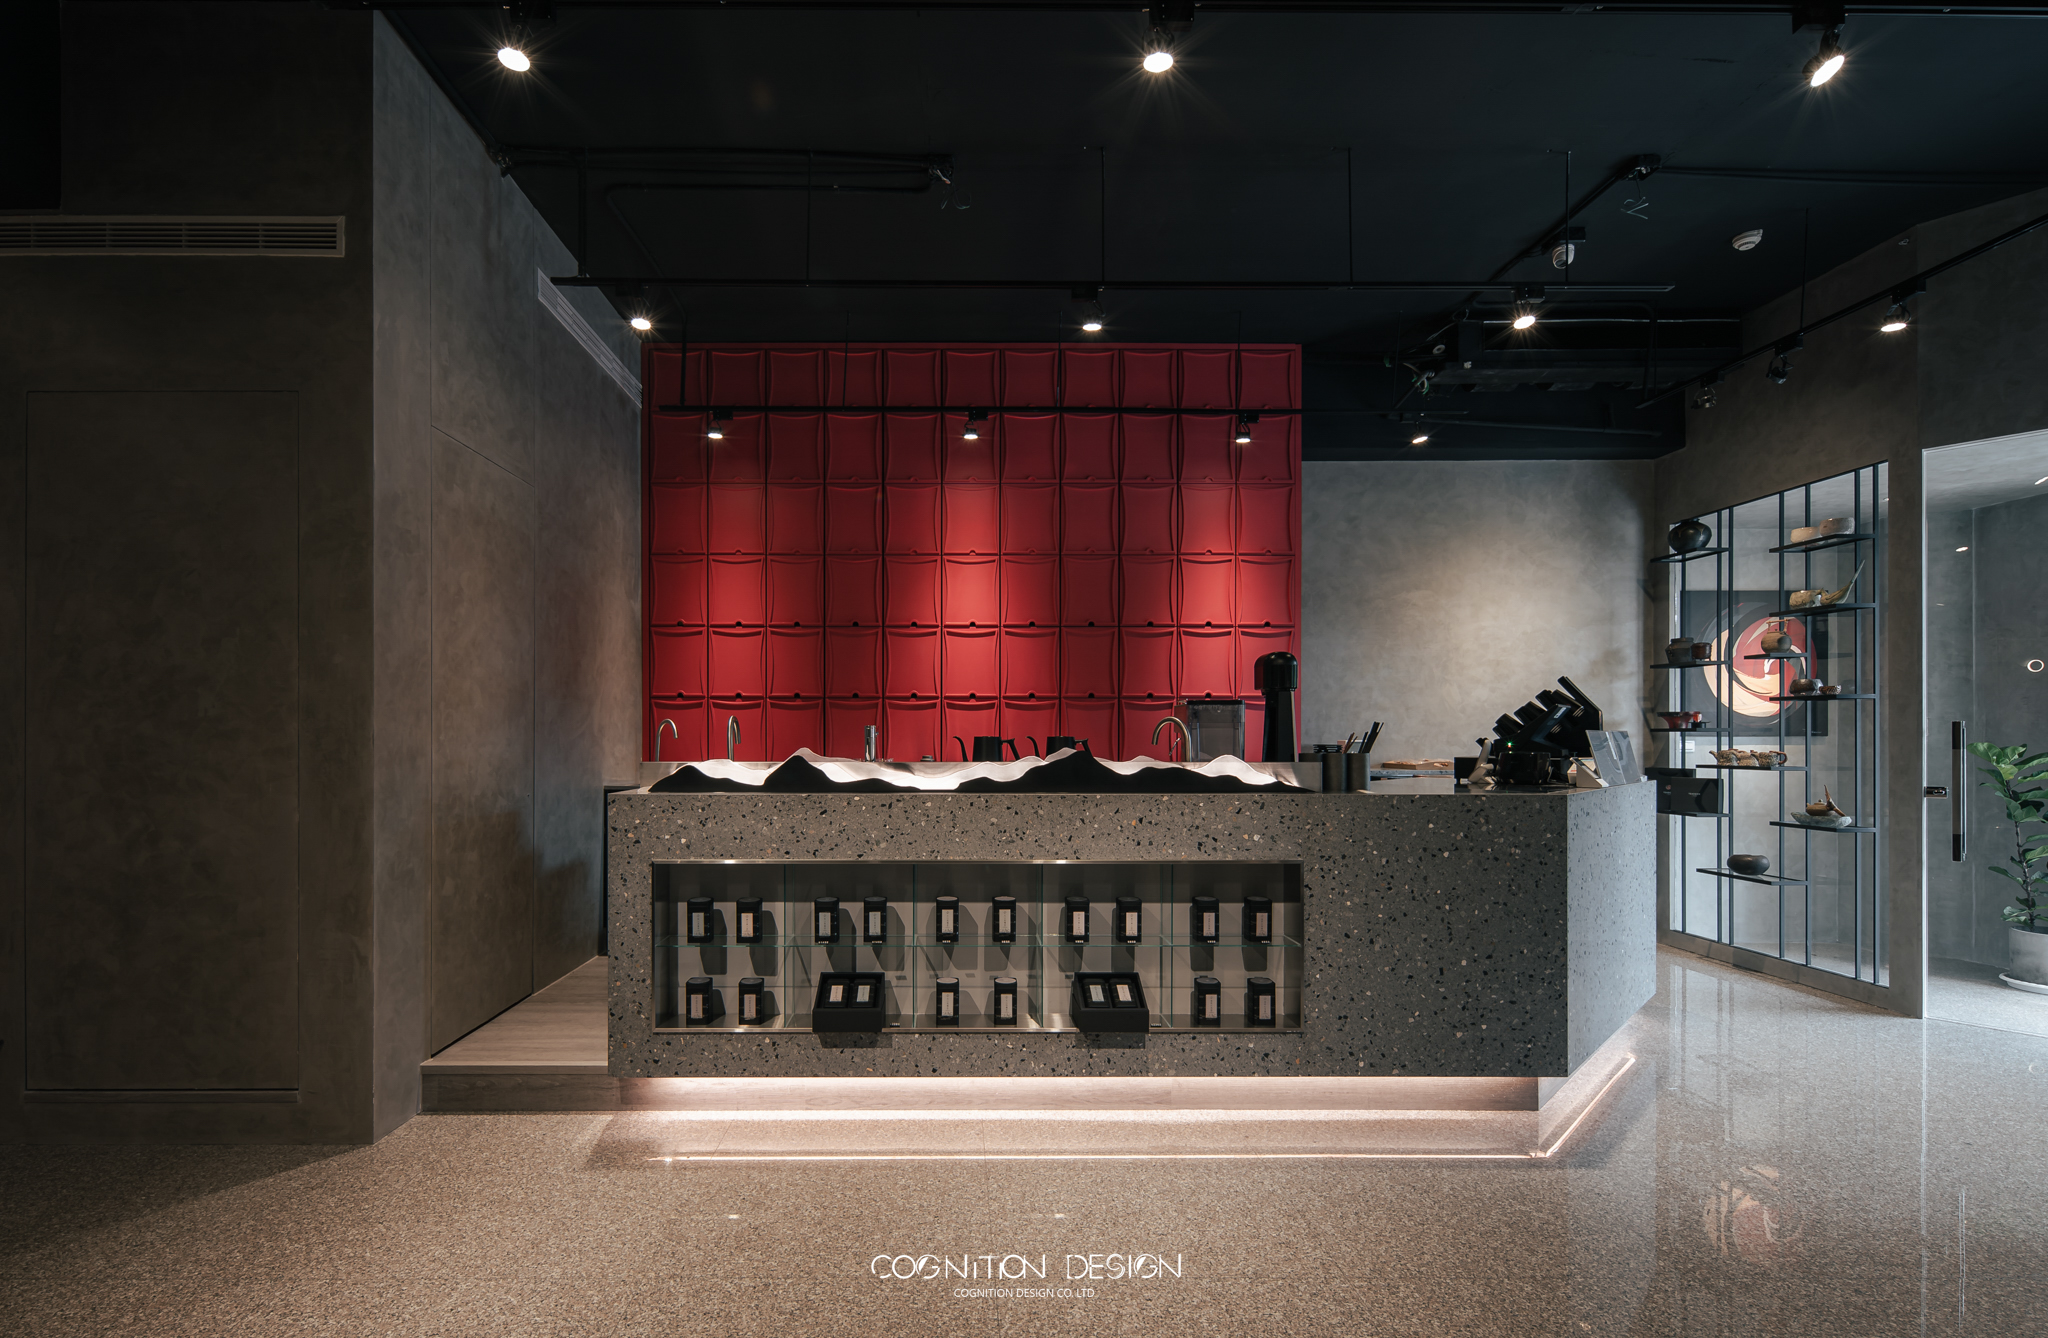 大面紅色櫃體則為點綴整體空間，為室內設計風格中的視覺主角，也是象徵著新中式人文風格融合現代的一種表徵。